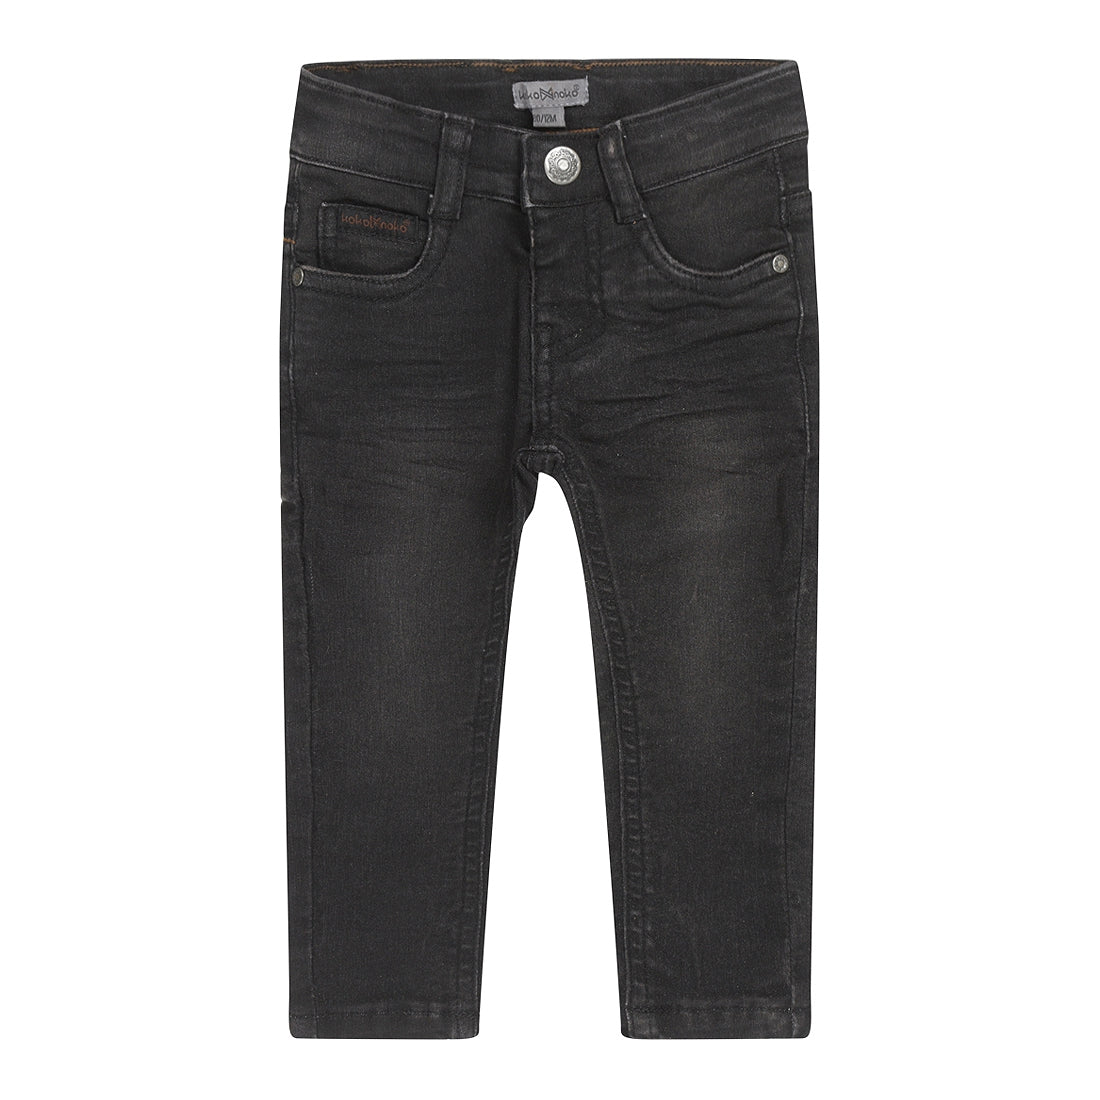 Jongens Jeans skinny van Koko Noko in de kleur Black jeans in maat 128.